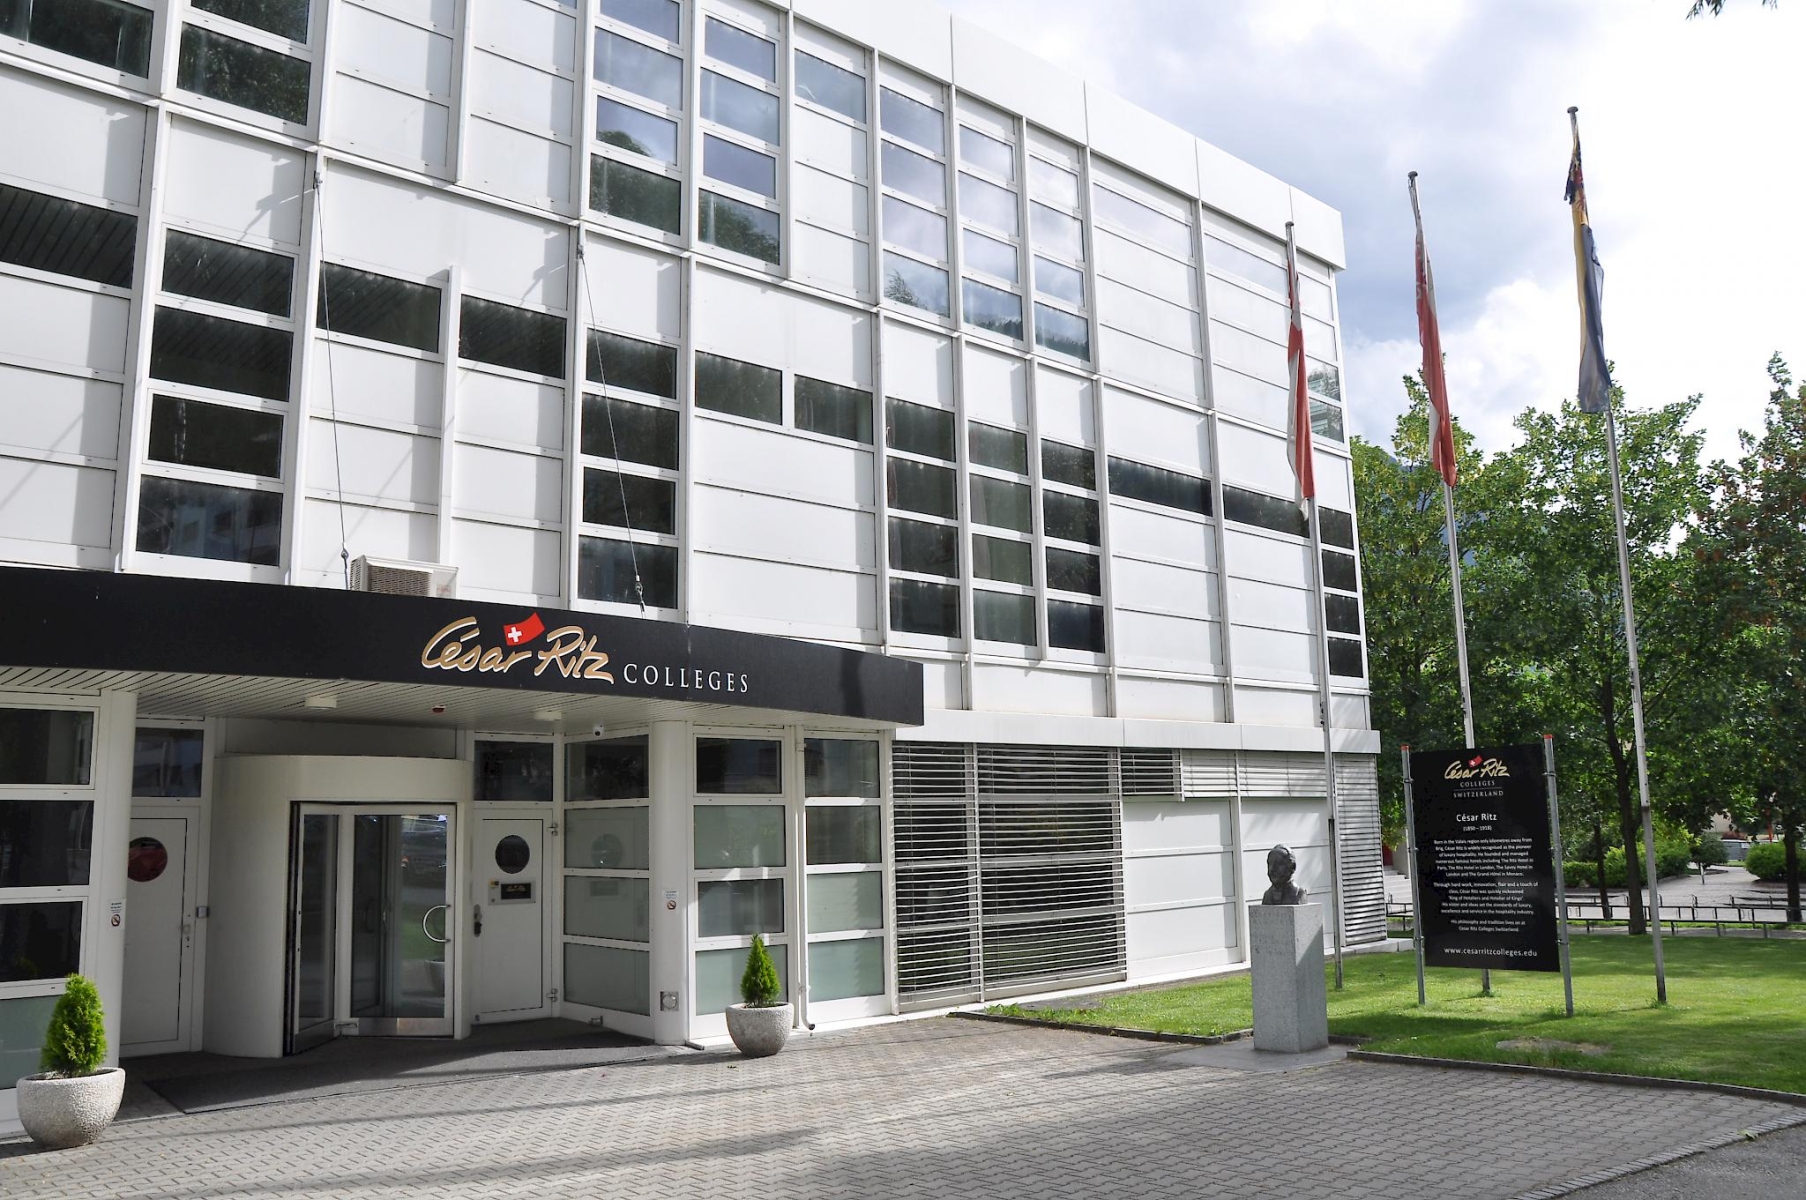 César Ritz Colleges có 3 cơ sở chính tại Le Bouveret, Lucerne và Brig